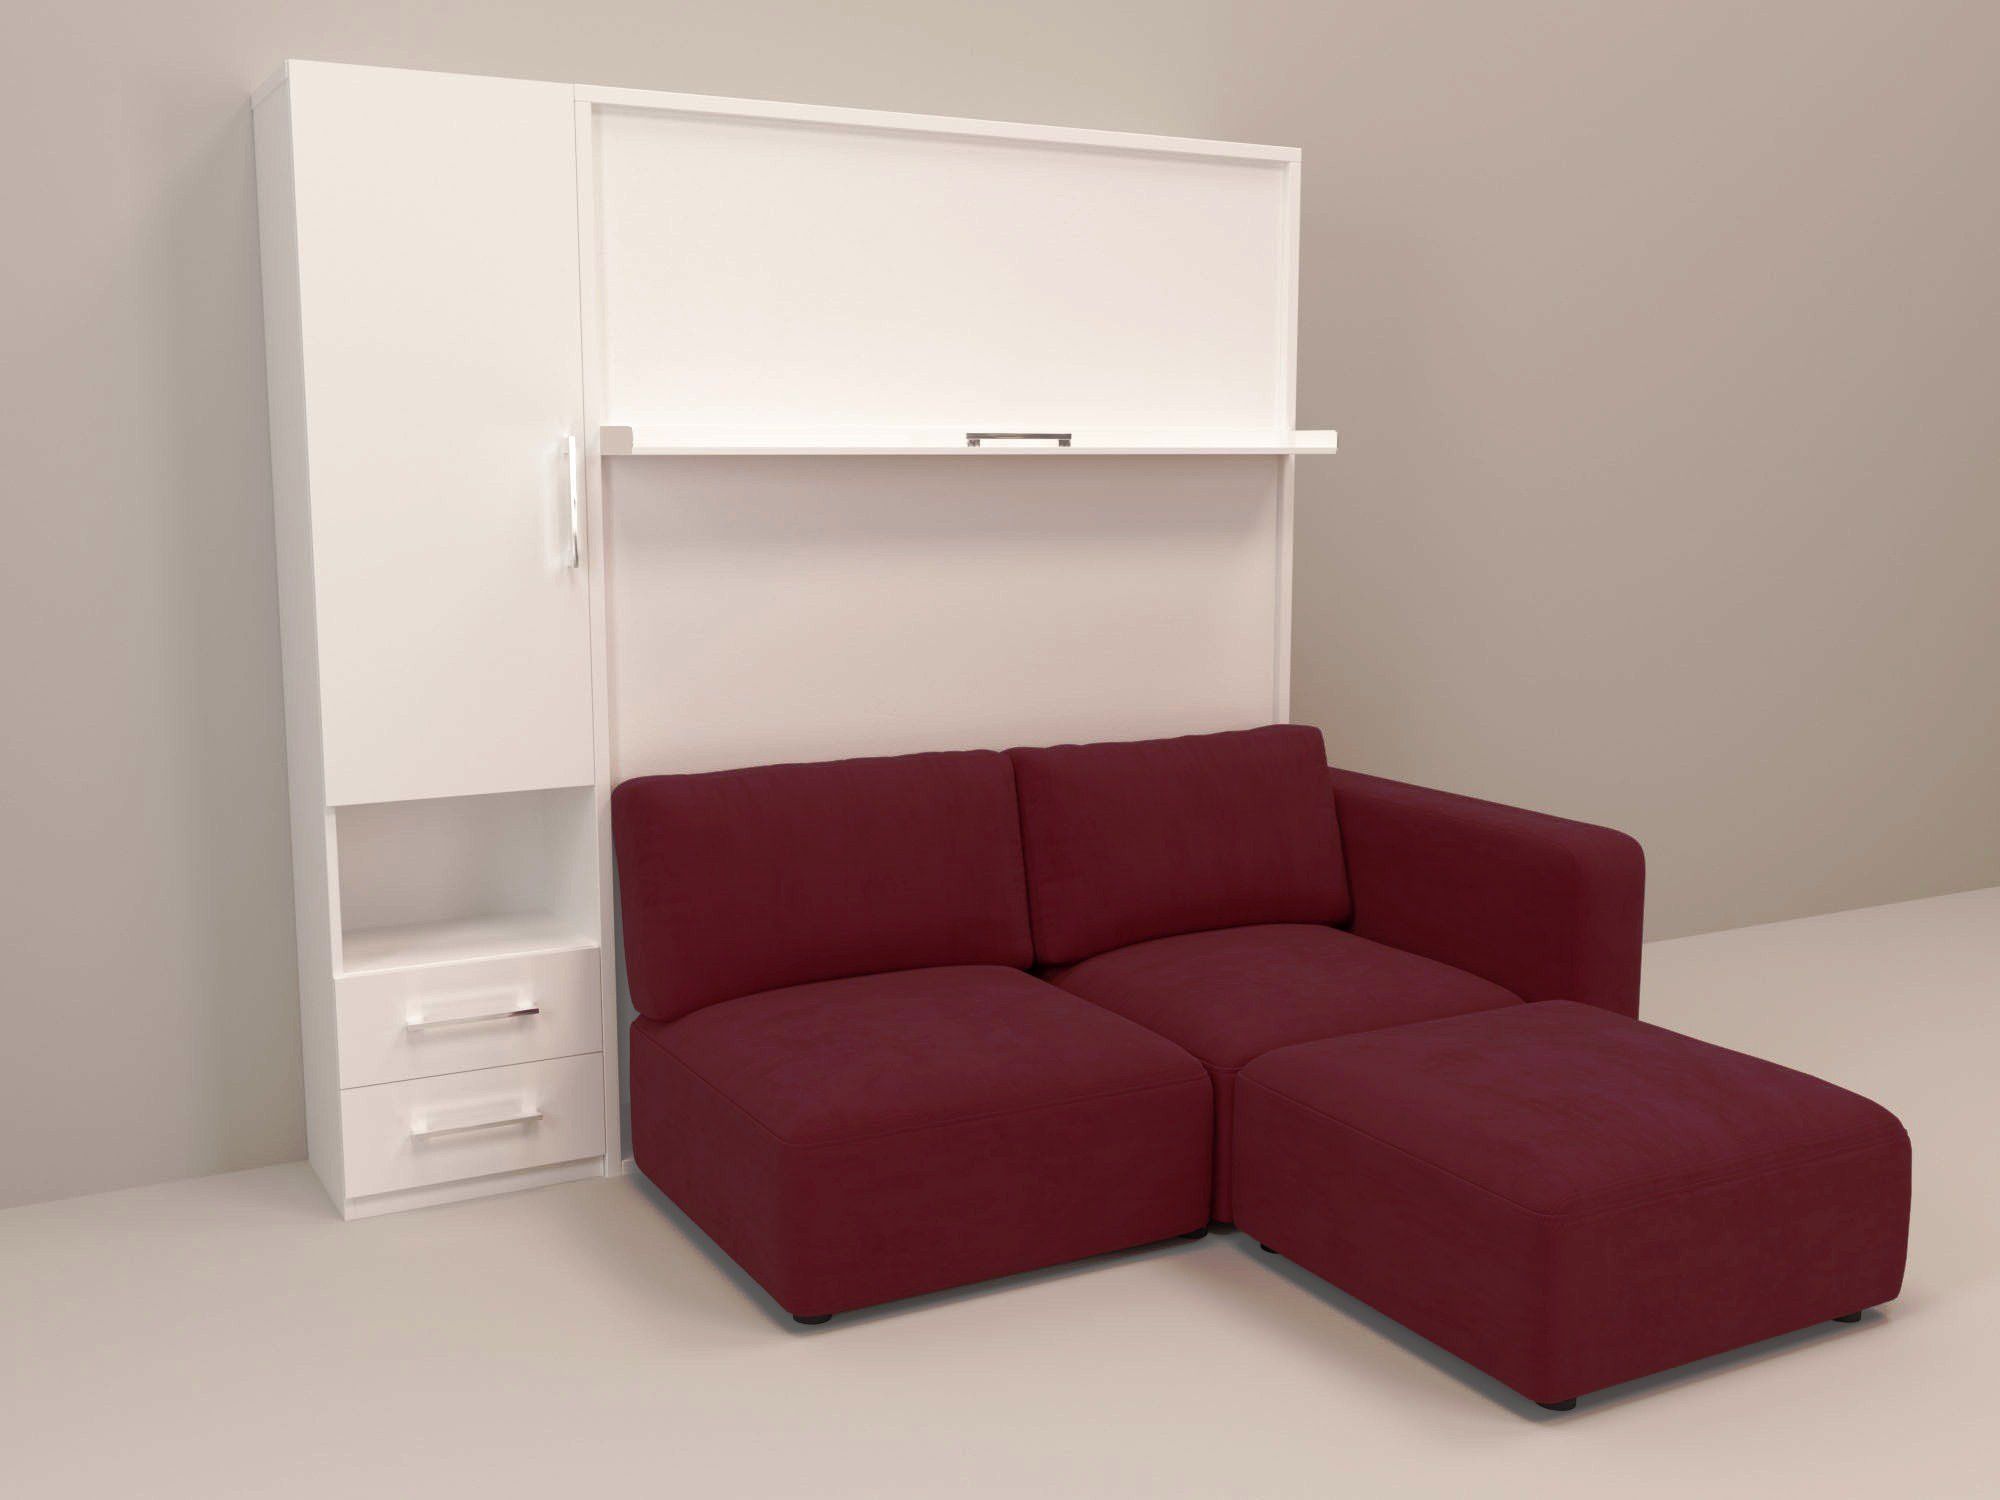 Шкаф кровать с диваном в спб. Икеа мебель трансформер шкаф диван кровать 1.5. Хофф кровать шкаф трансформер. Мебель хофф кровать трансформер. Хофф шкаф-кровать-диван трансформер 3 в 1.